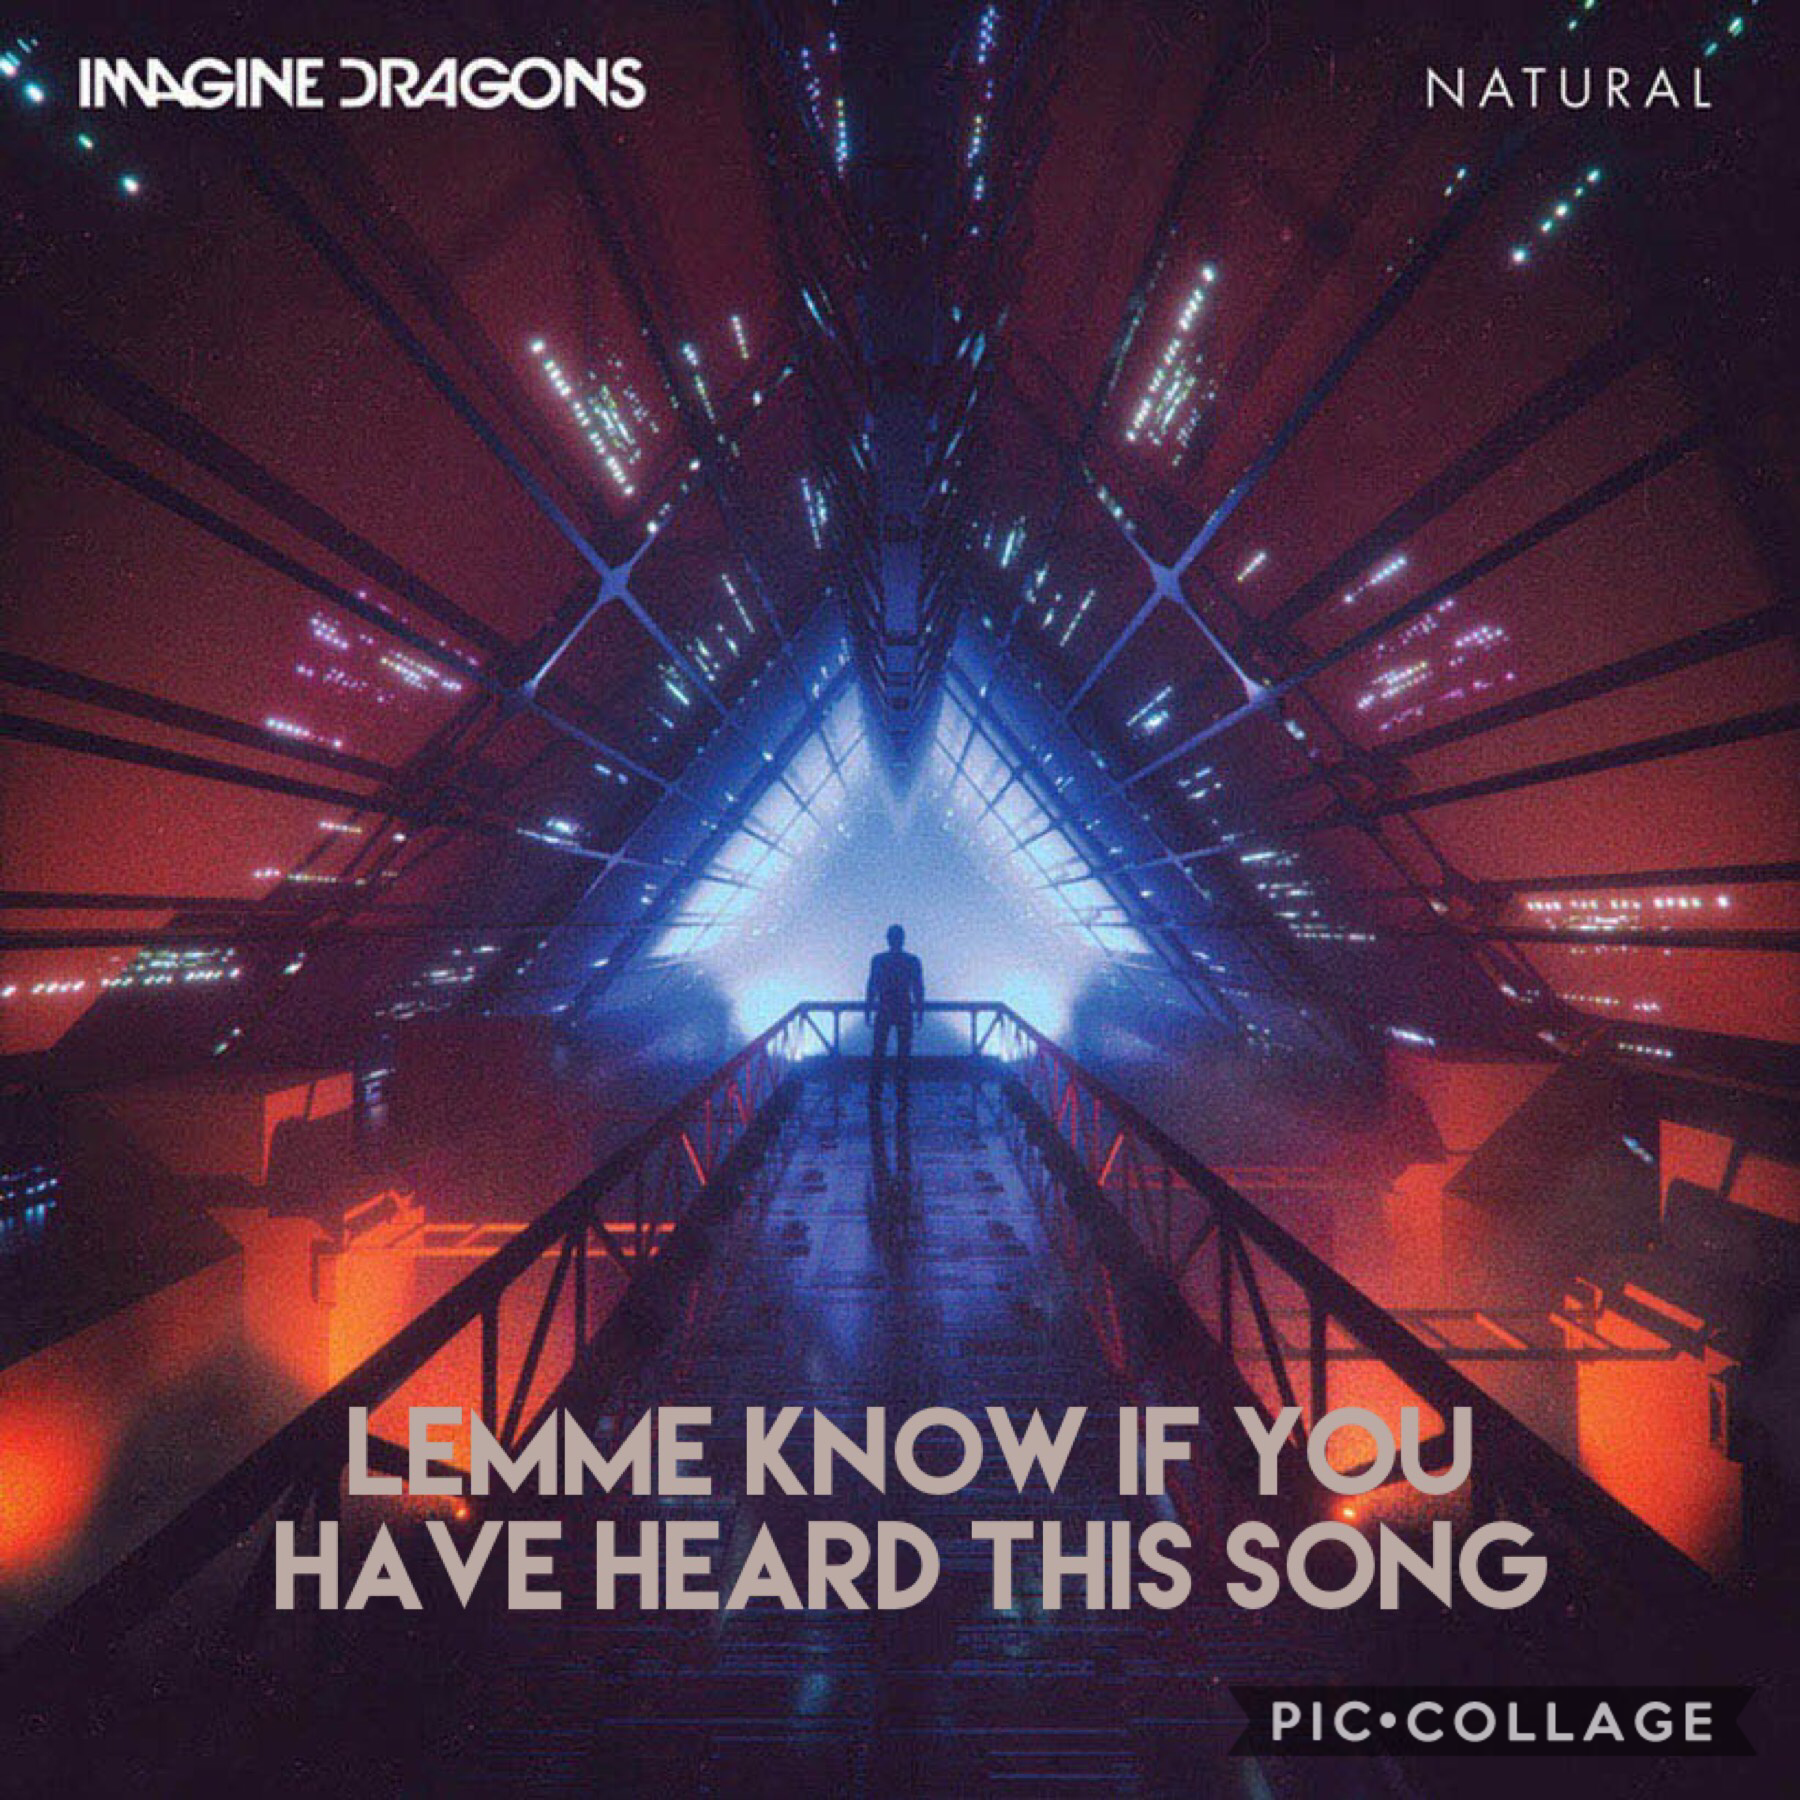 Anyone heard the new Imagine Dragons song “Natural’?